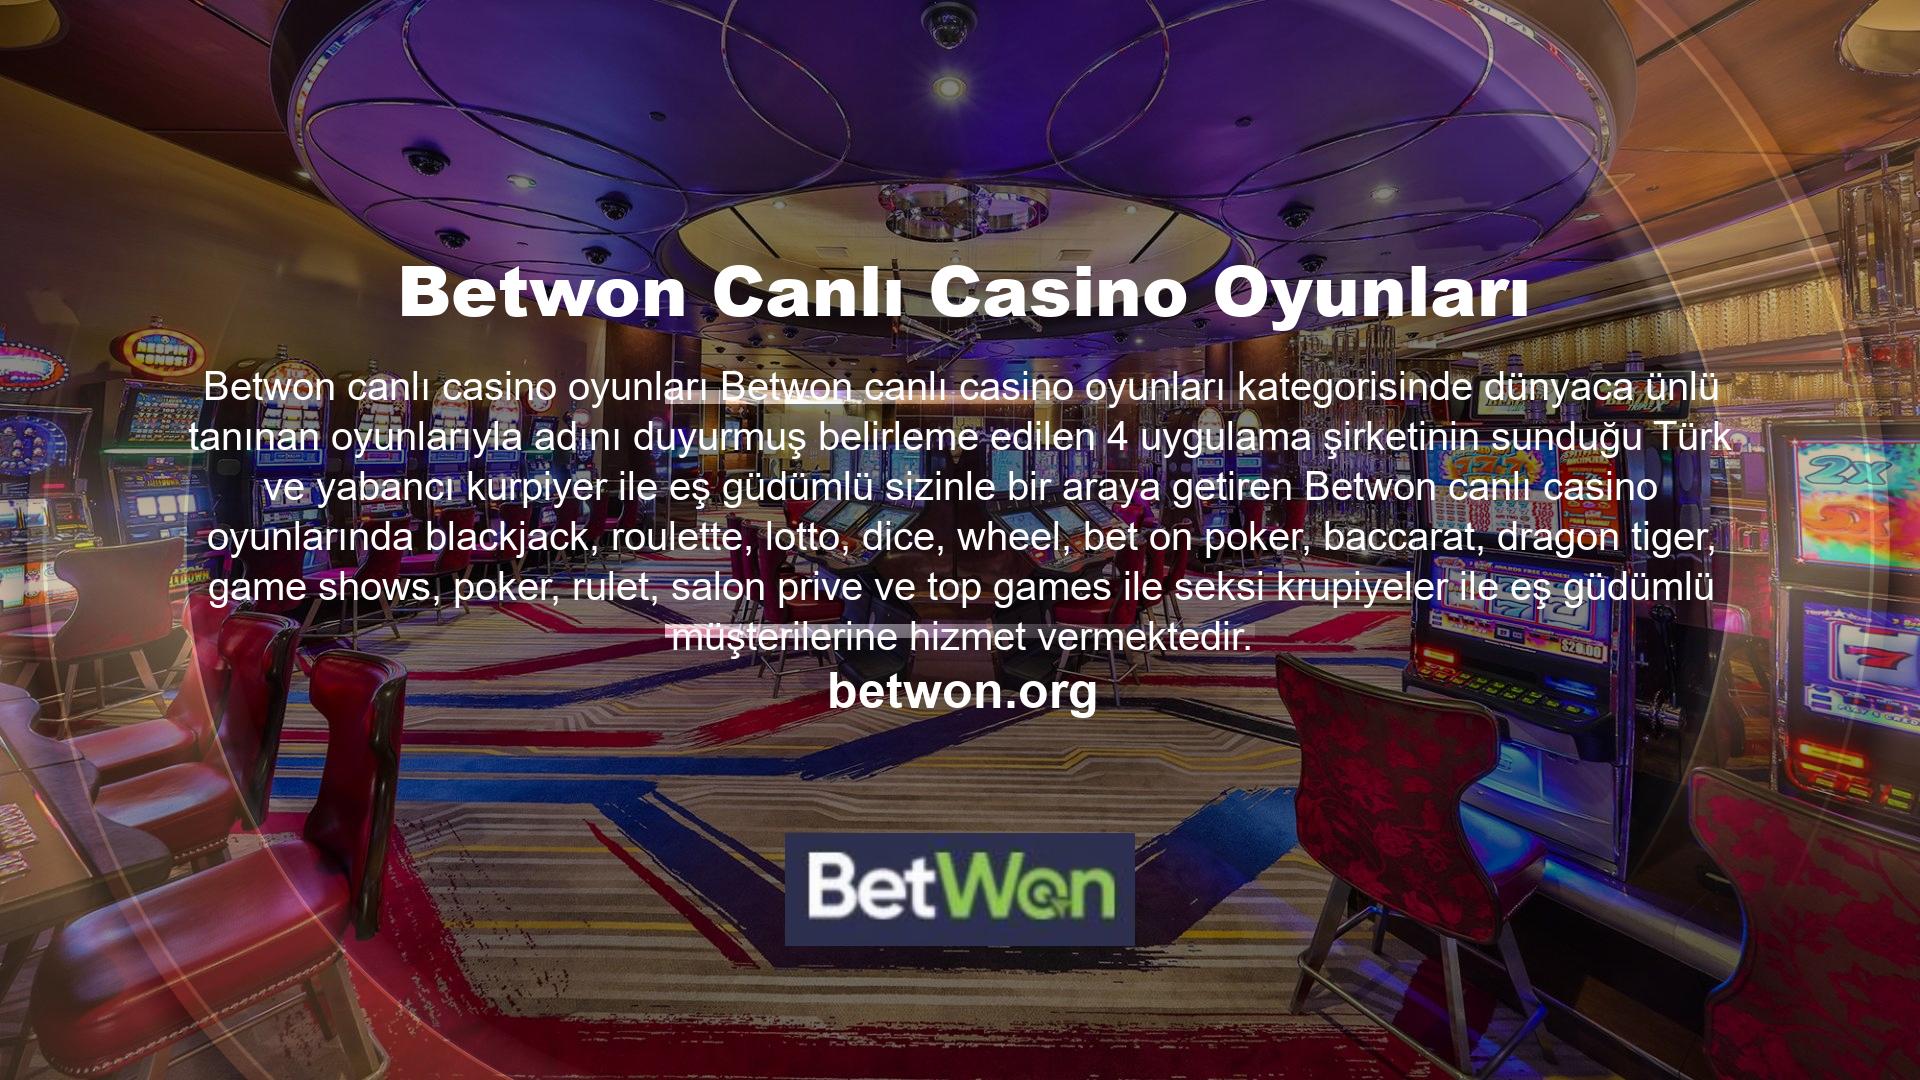 Sorunsuzca çalışan mobil casino sürümü, dilediğiniz her yerden Betwon casino oyunlarına ulaşmaya imkân vermektedir